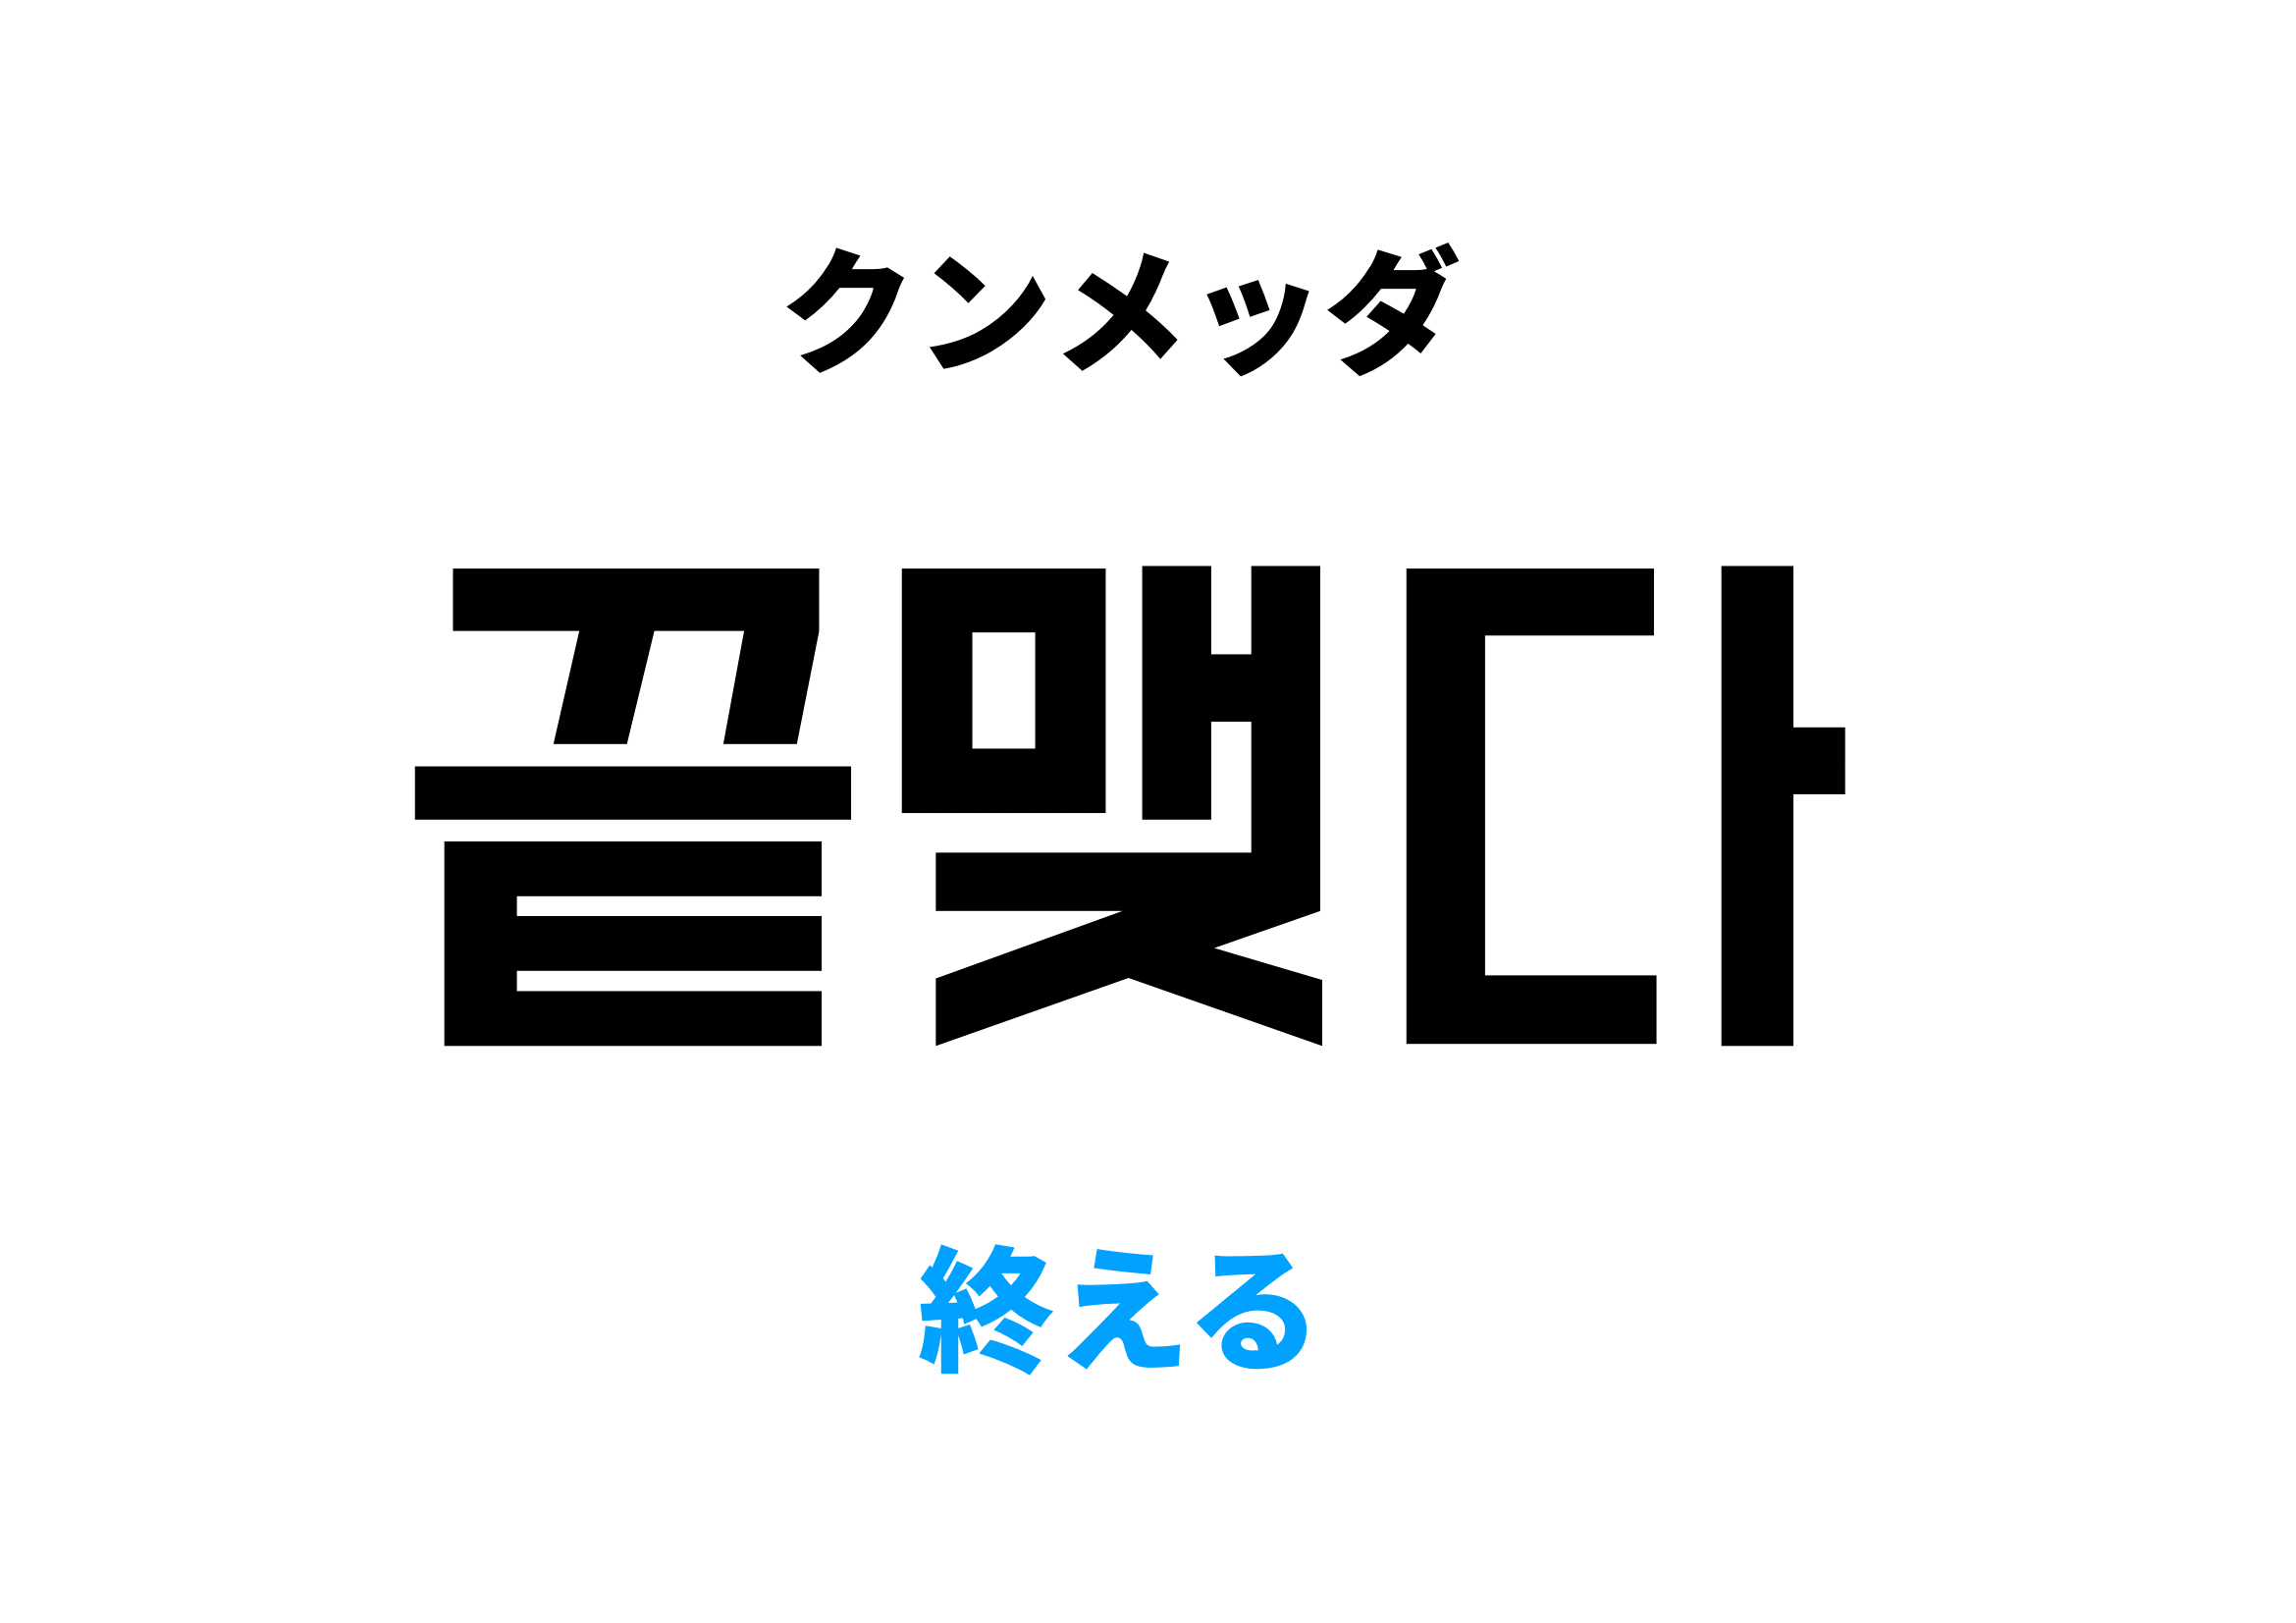 韓国語で終える [끝맺다]の意味と発音を学ぼう